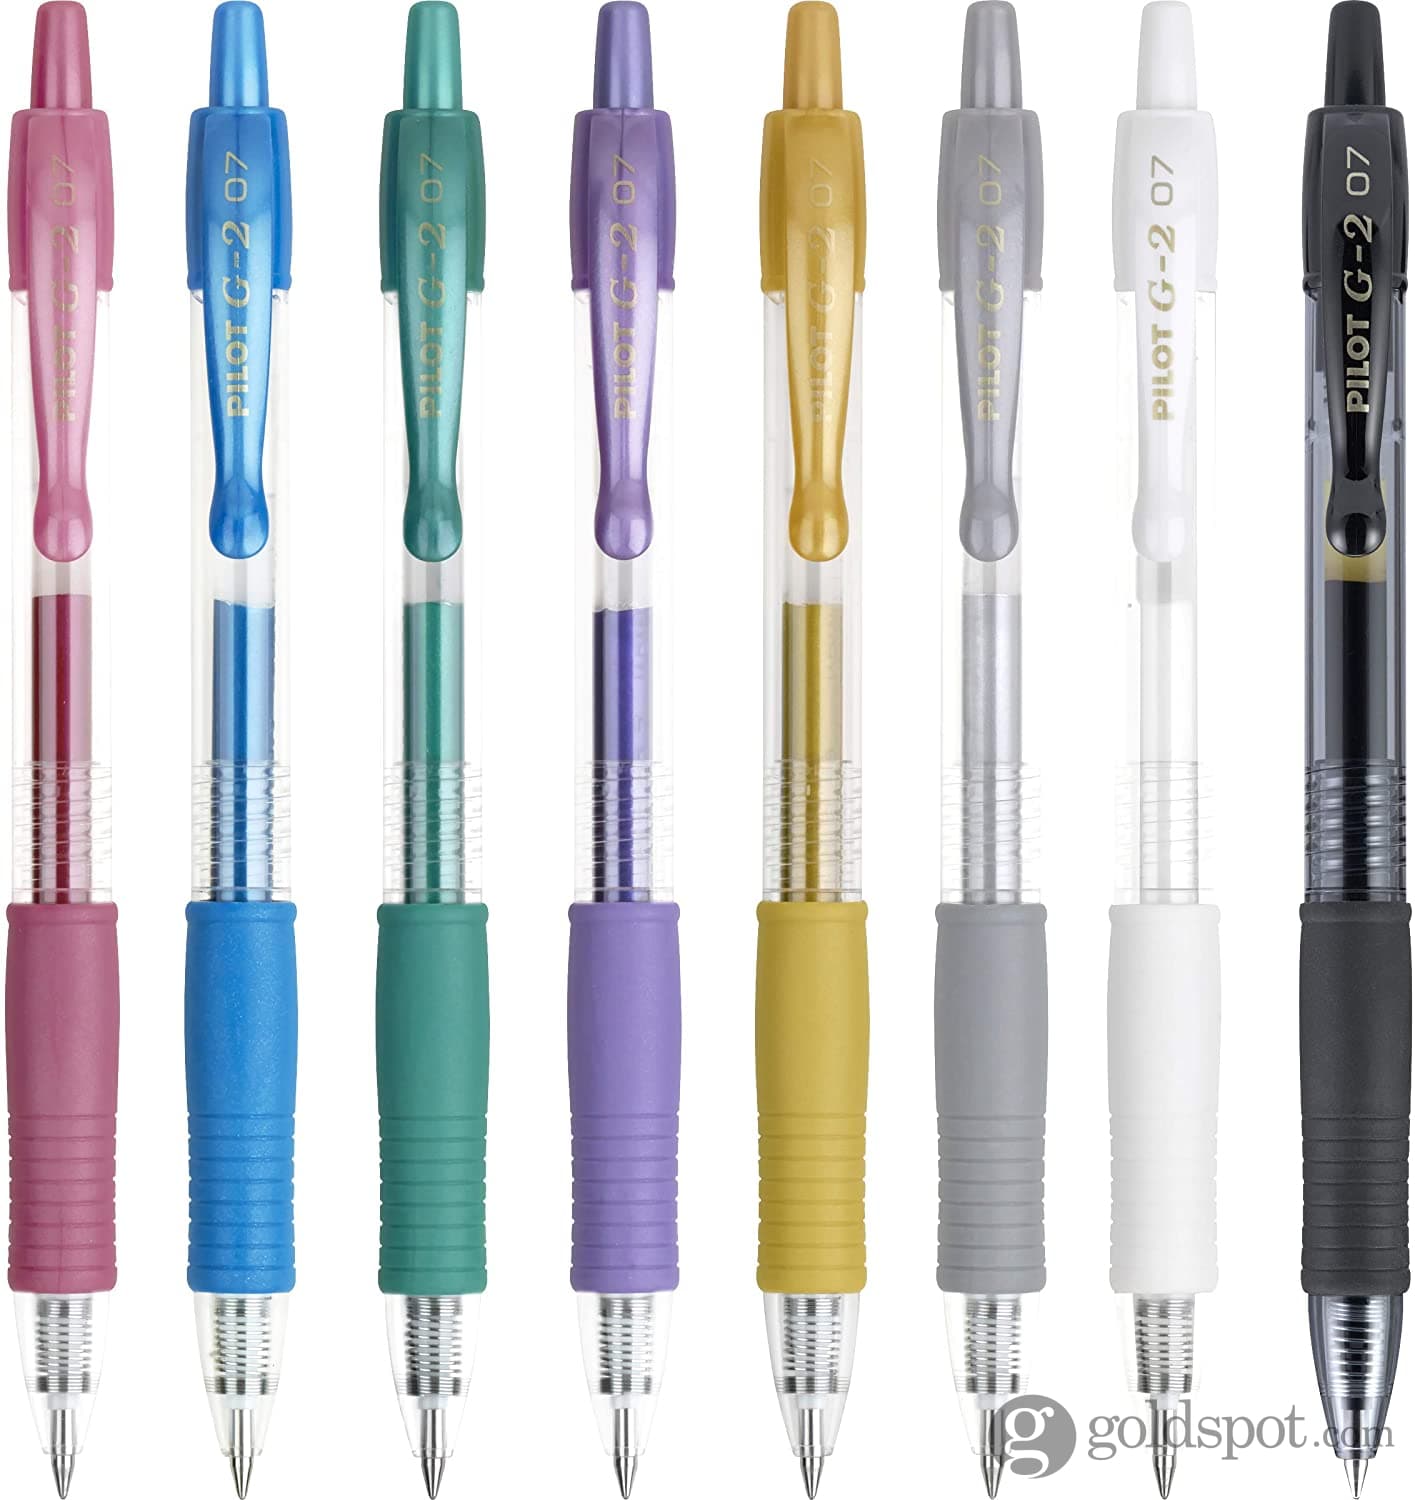 Mr. Pen- Pens, Felt Tip Pens, Pens Fine Point, Pack Of 8, Fast Dry